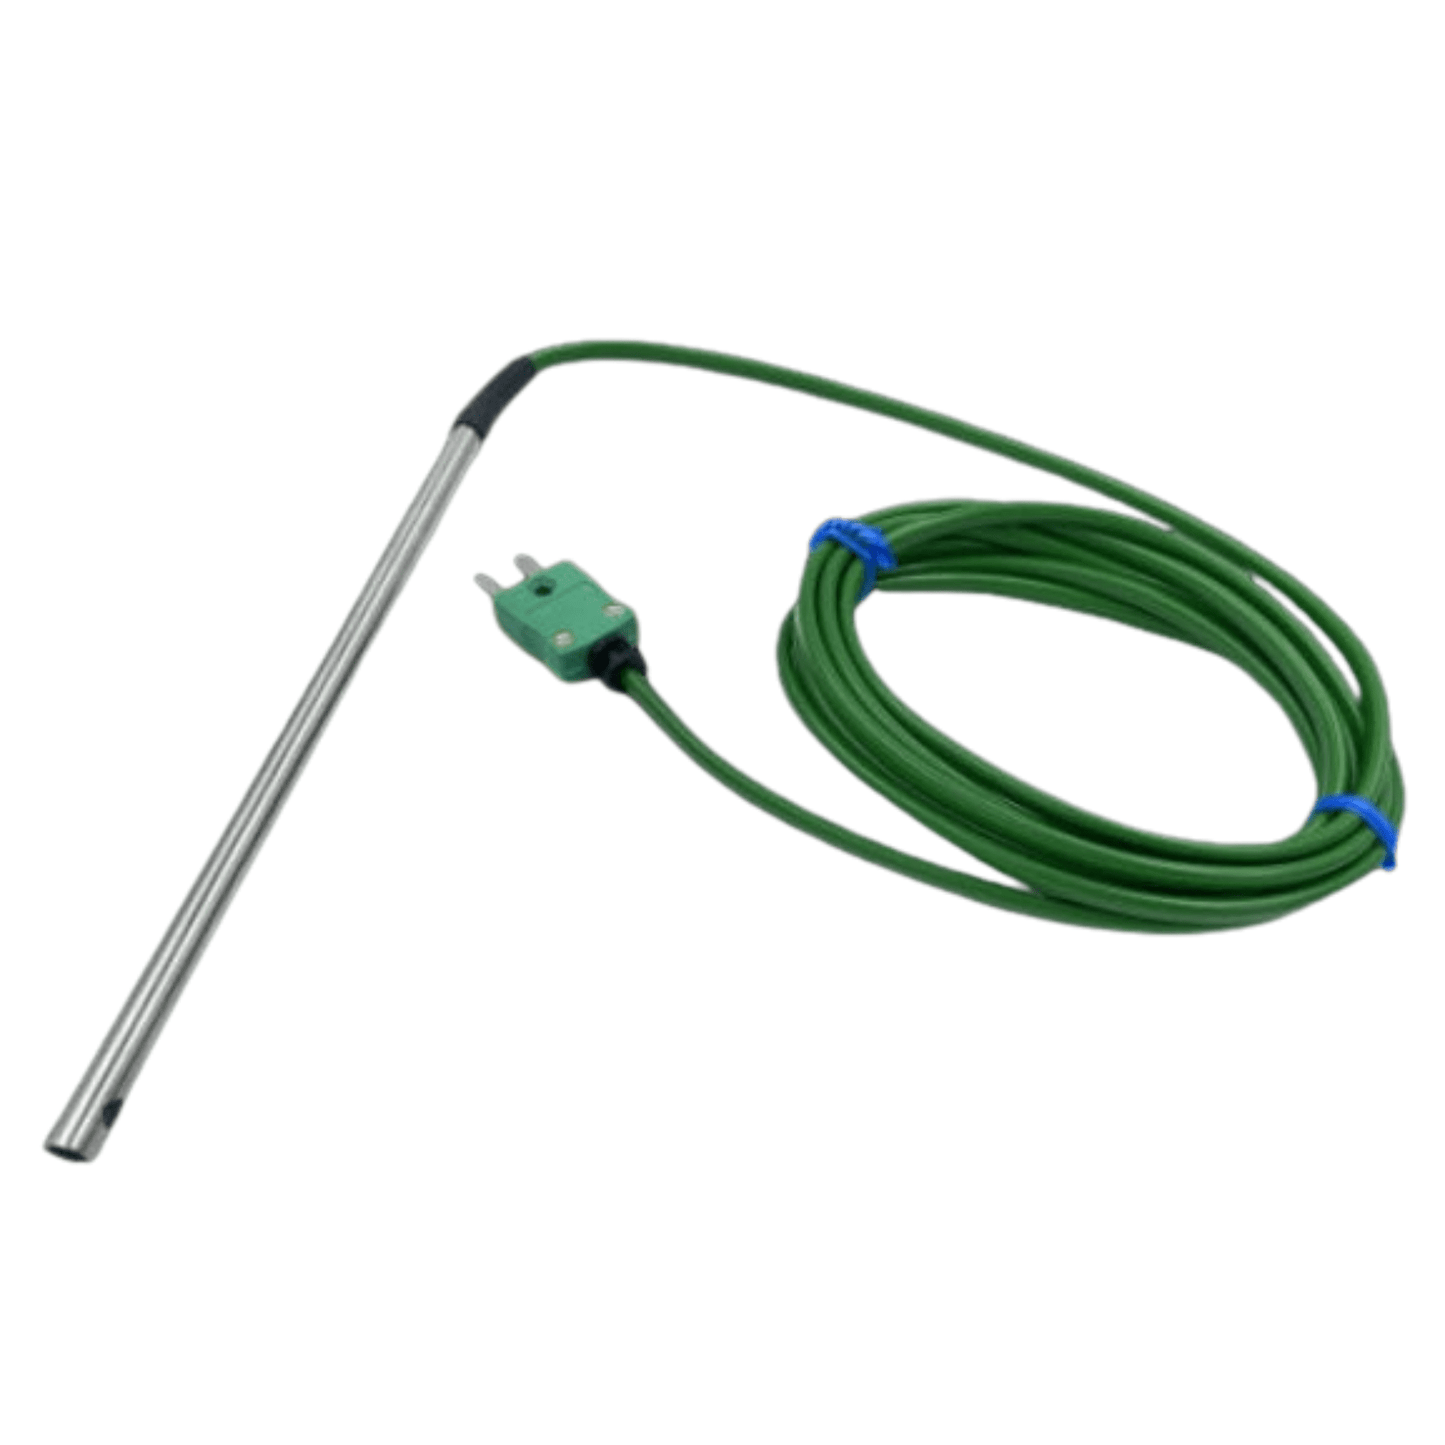 Une sonde verte de température d'air ou de gaz câblée avec une prise utilisée dans les applications CVC par Thermomètre.fr.